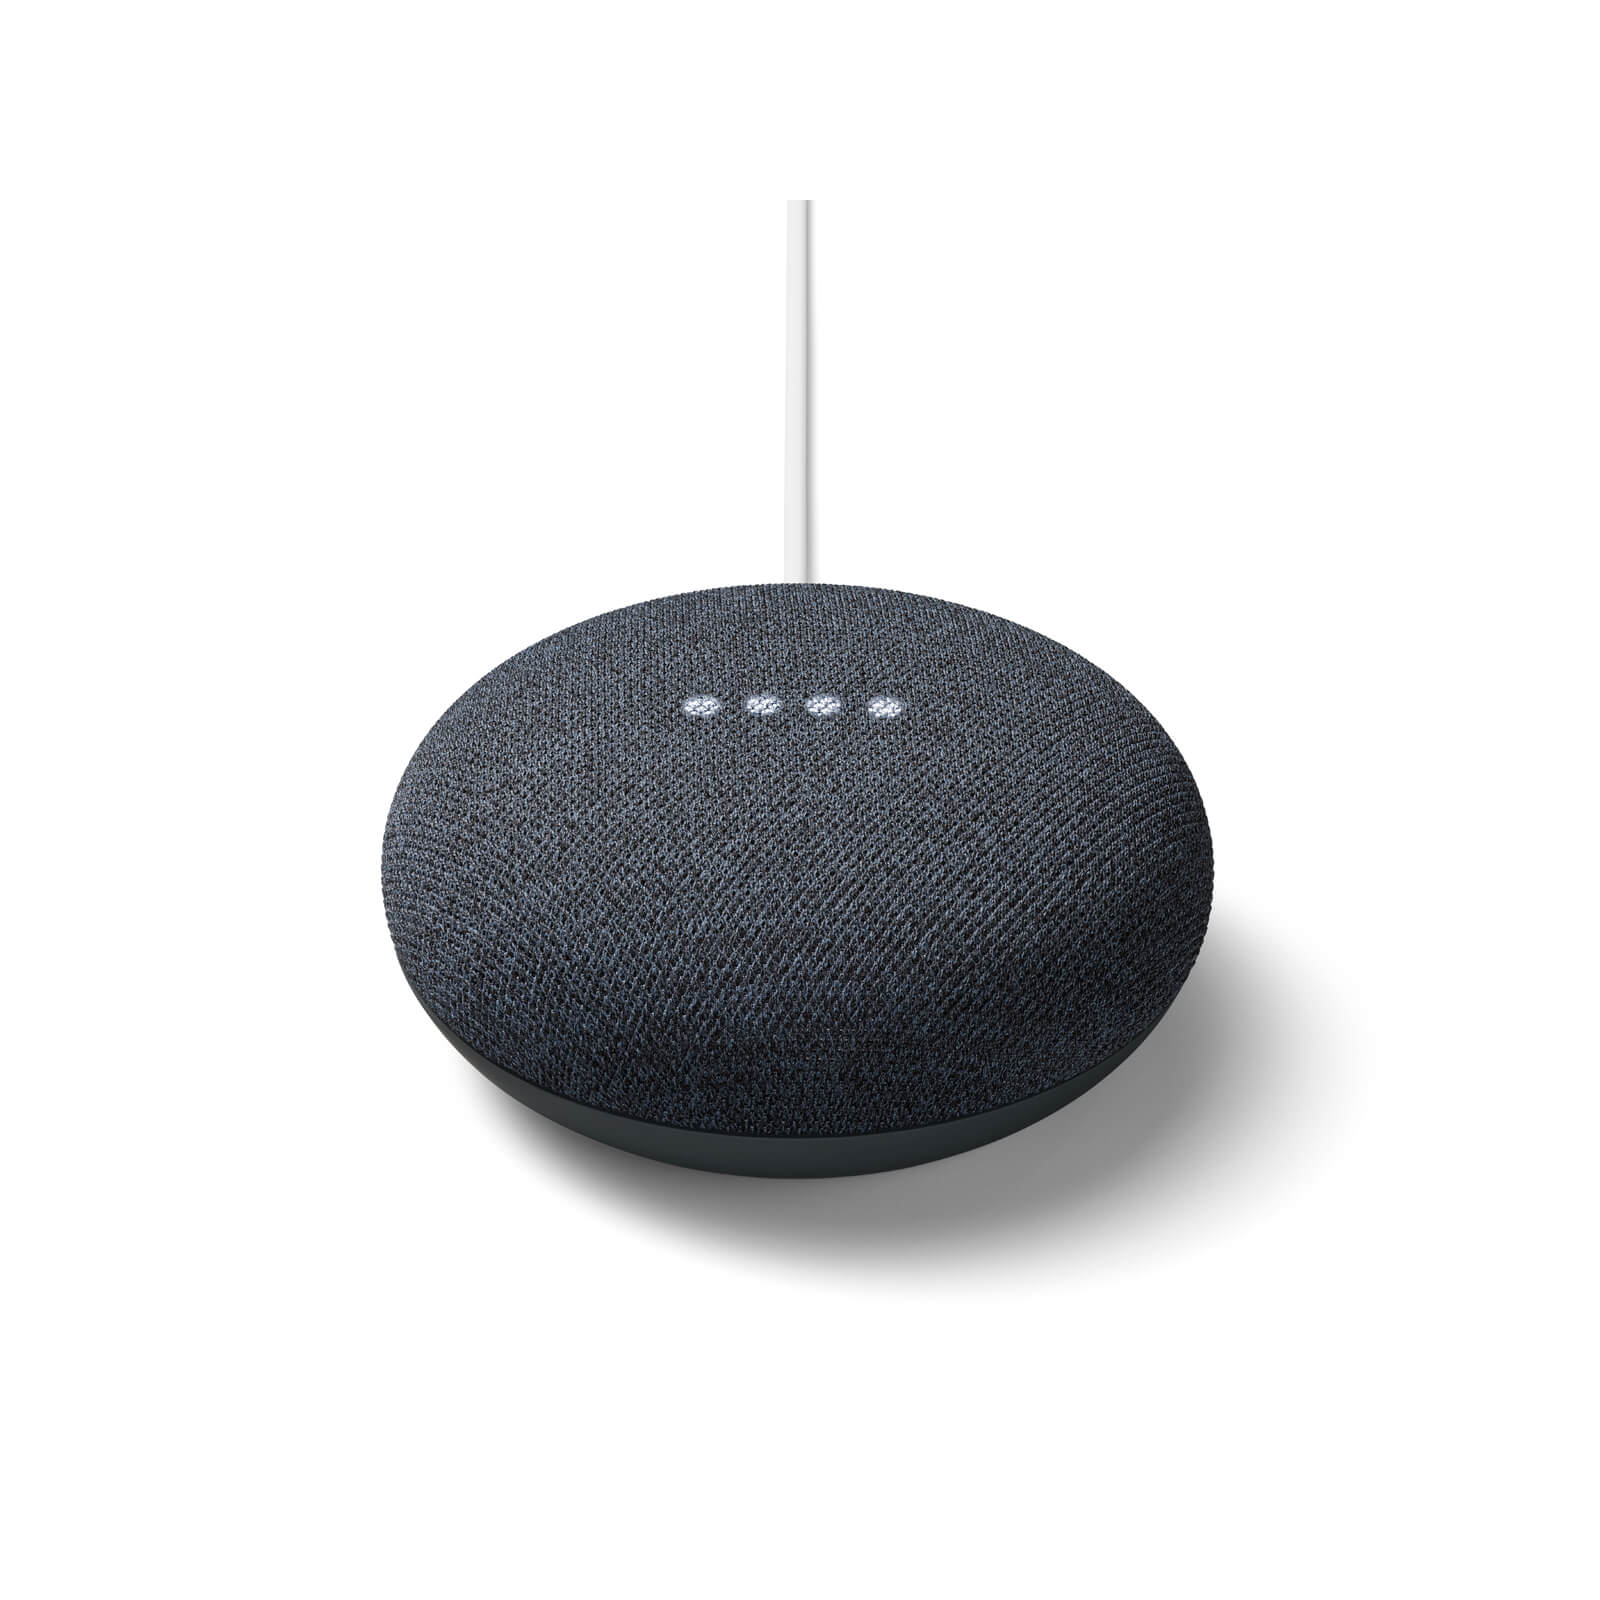 Google Nest Mini - slimme luidspreker - houtskool kleur - Generatie 2